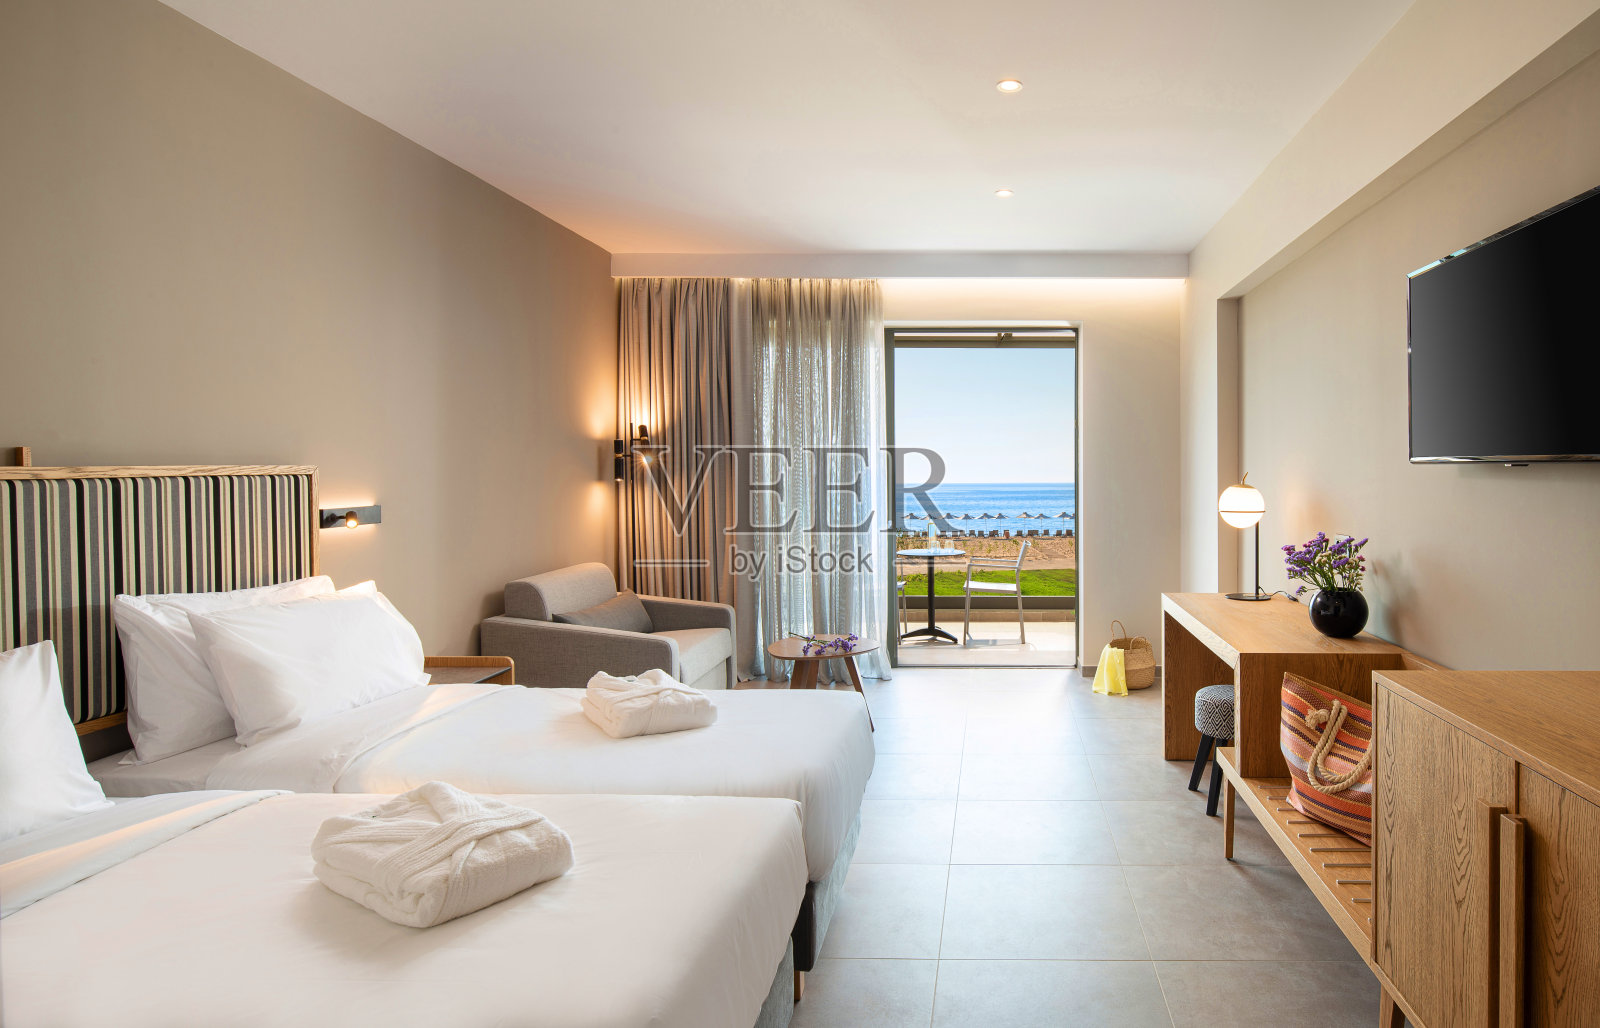 米色条纹和浅木室内现代极简主义风格的双人间酒店客房开放的落地窗和海景照片摄影图片